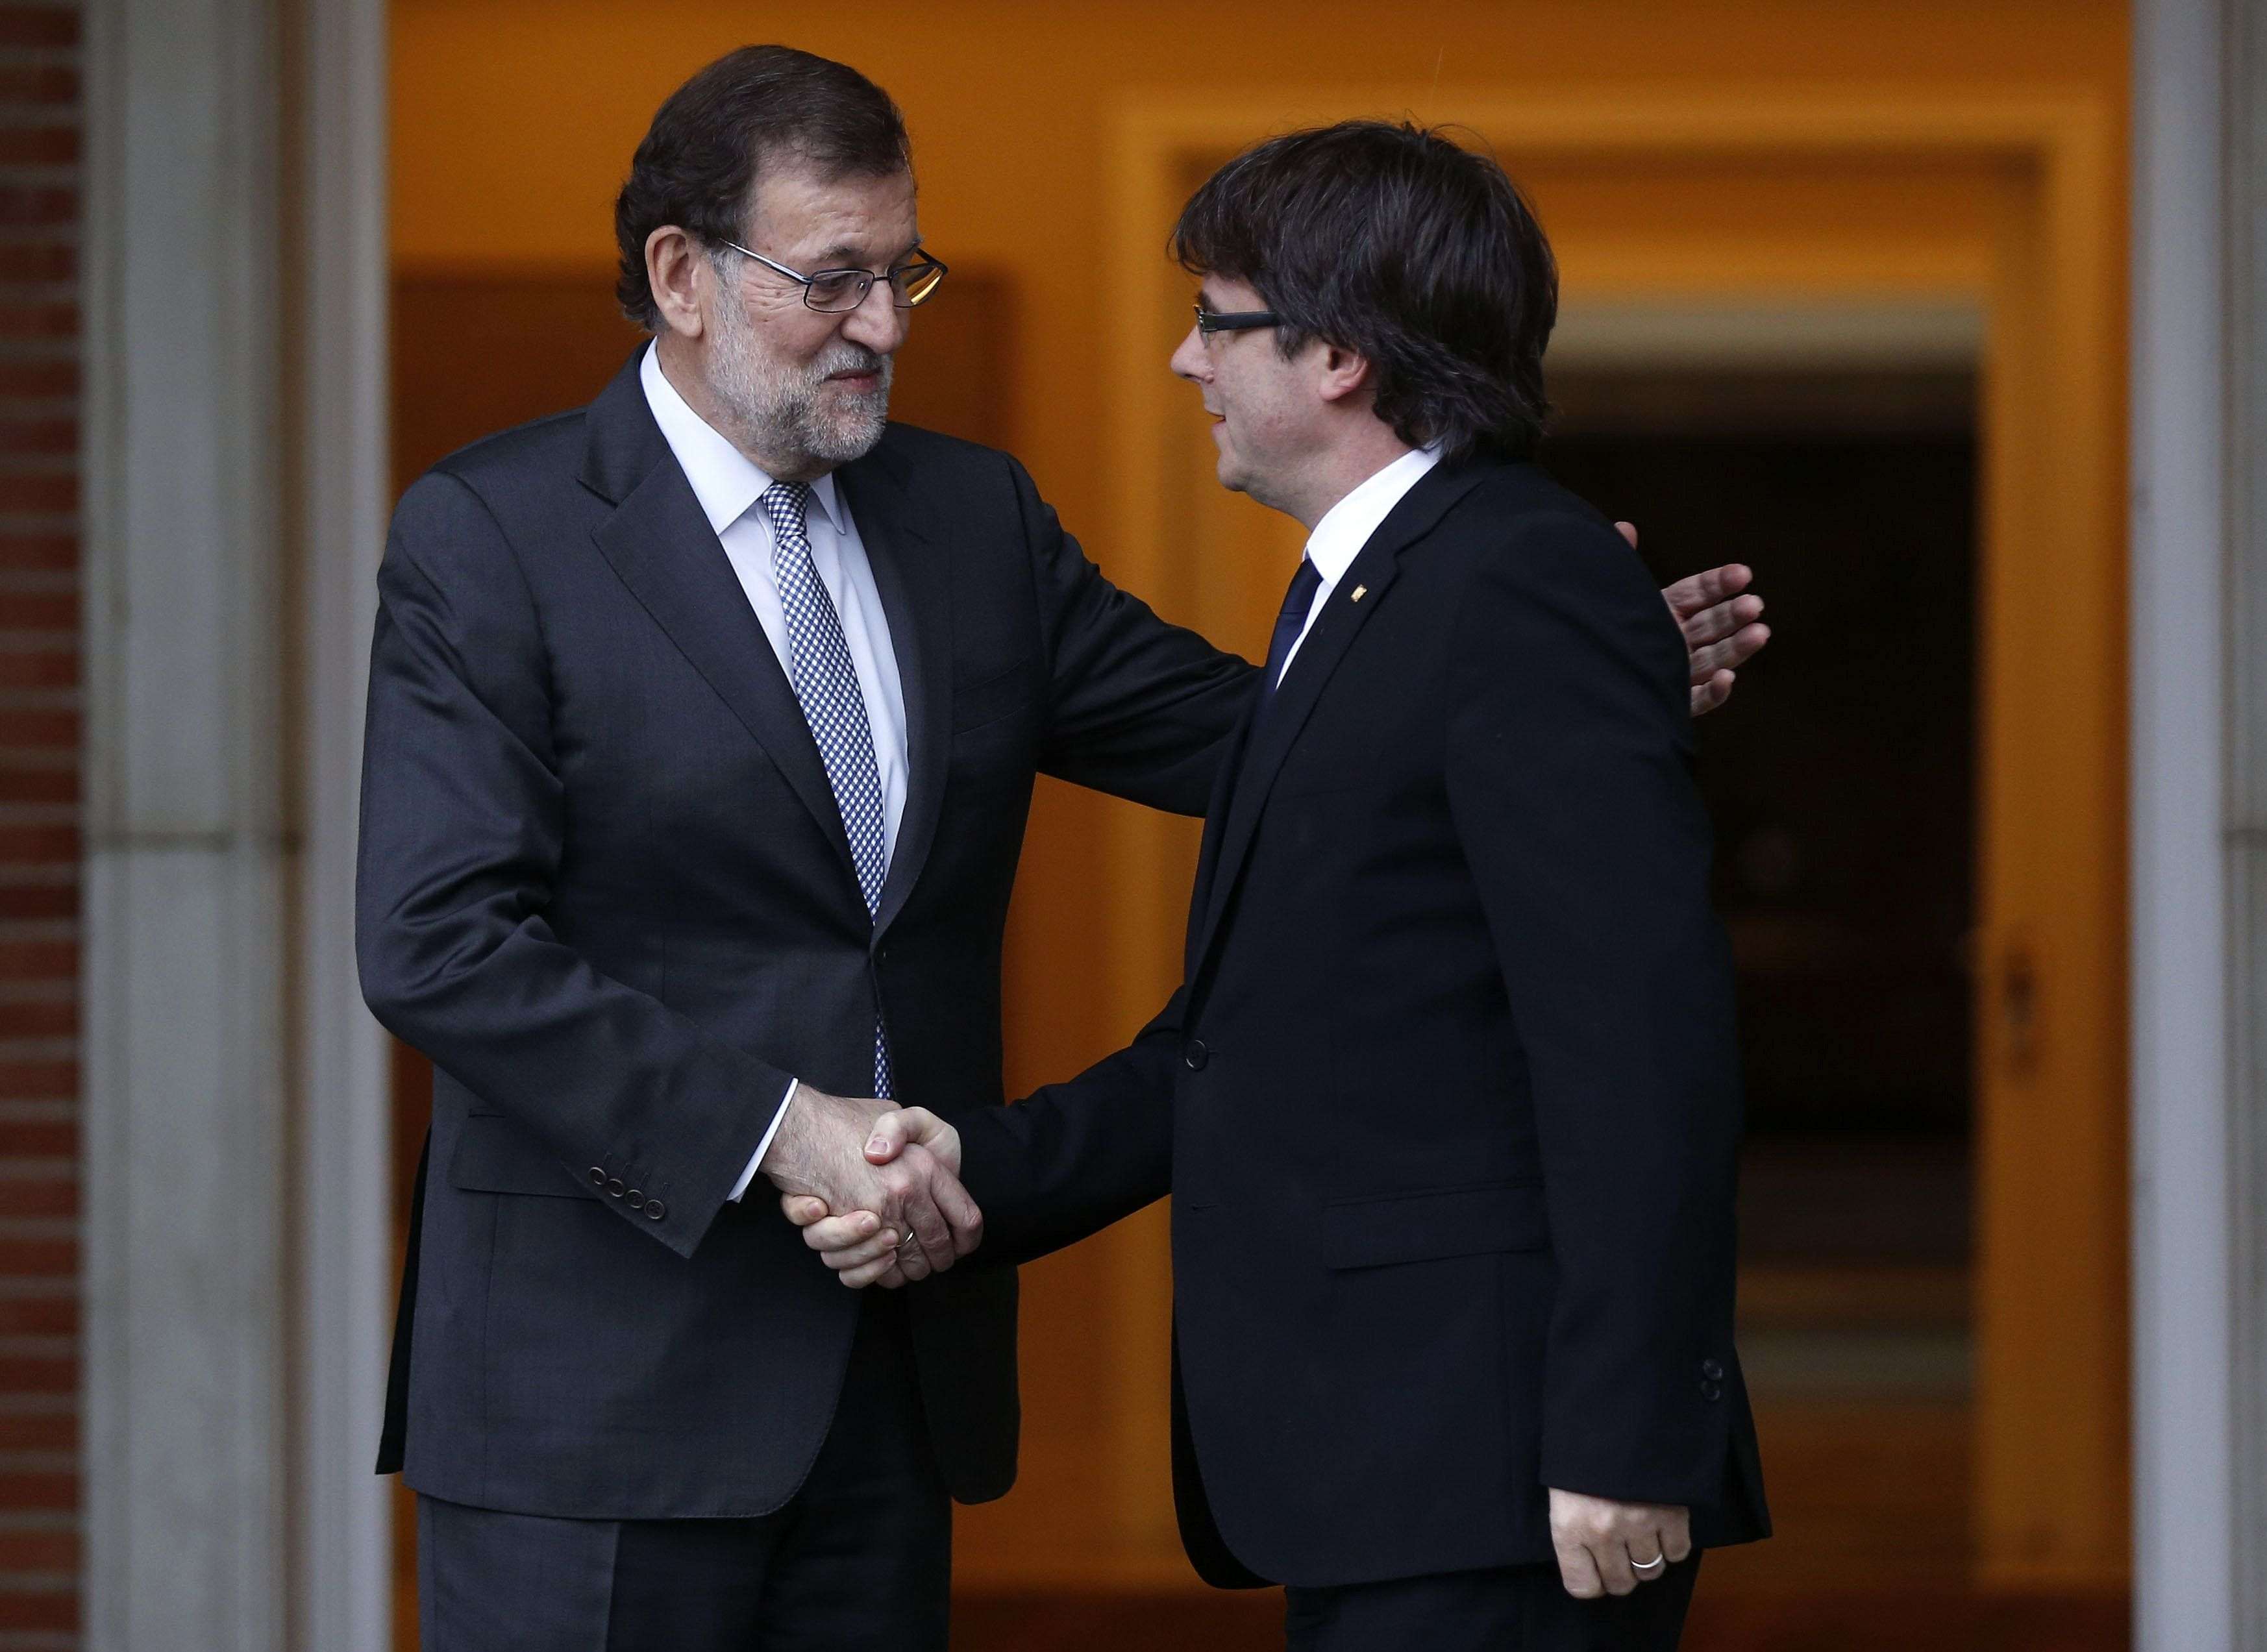 La invitación de Rajoy a Puigdemont y Junqueras: sin nombre y preguntando quién irá de la "entidad"